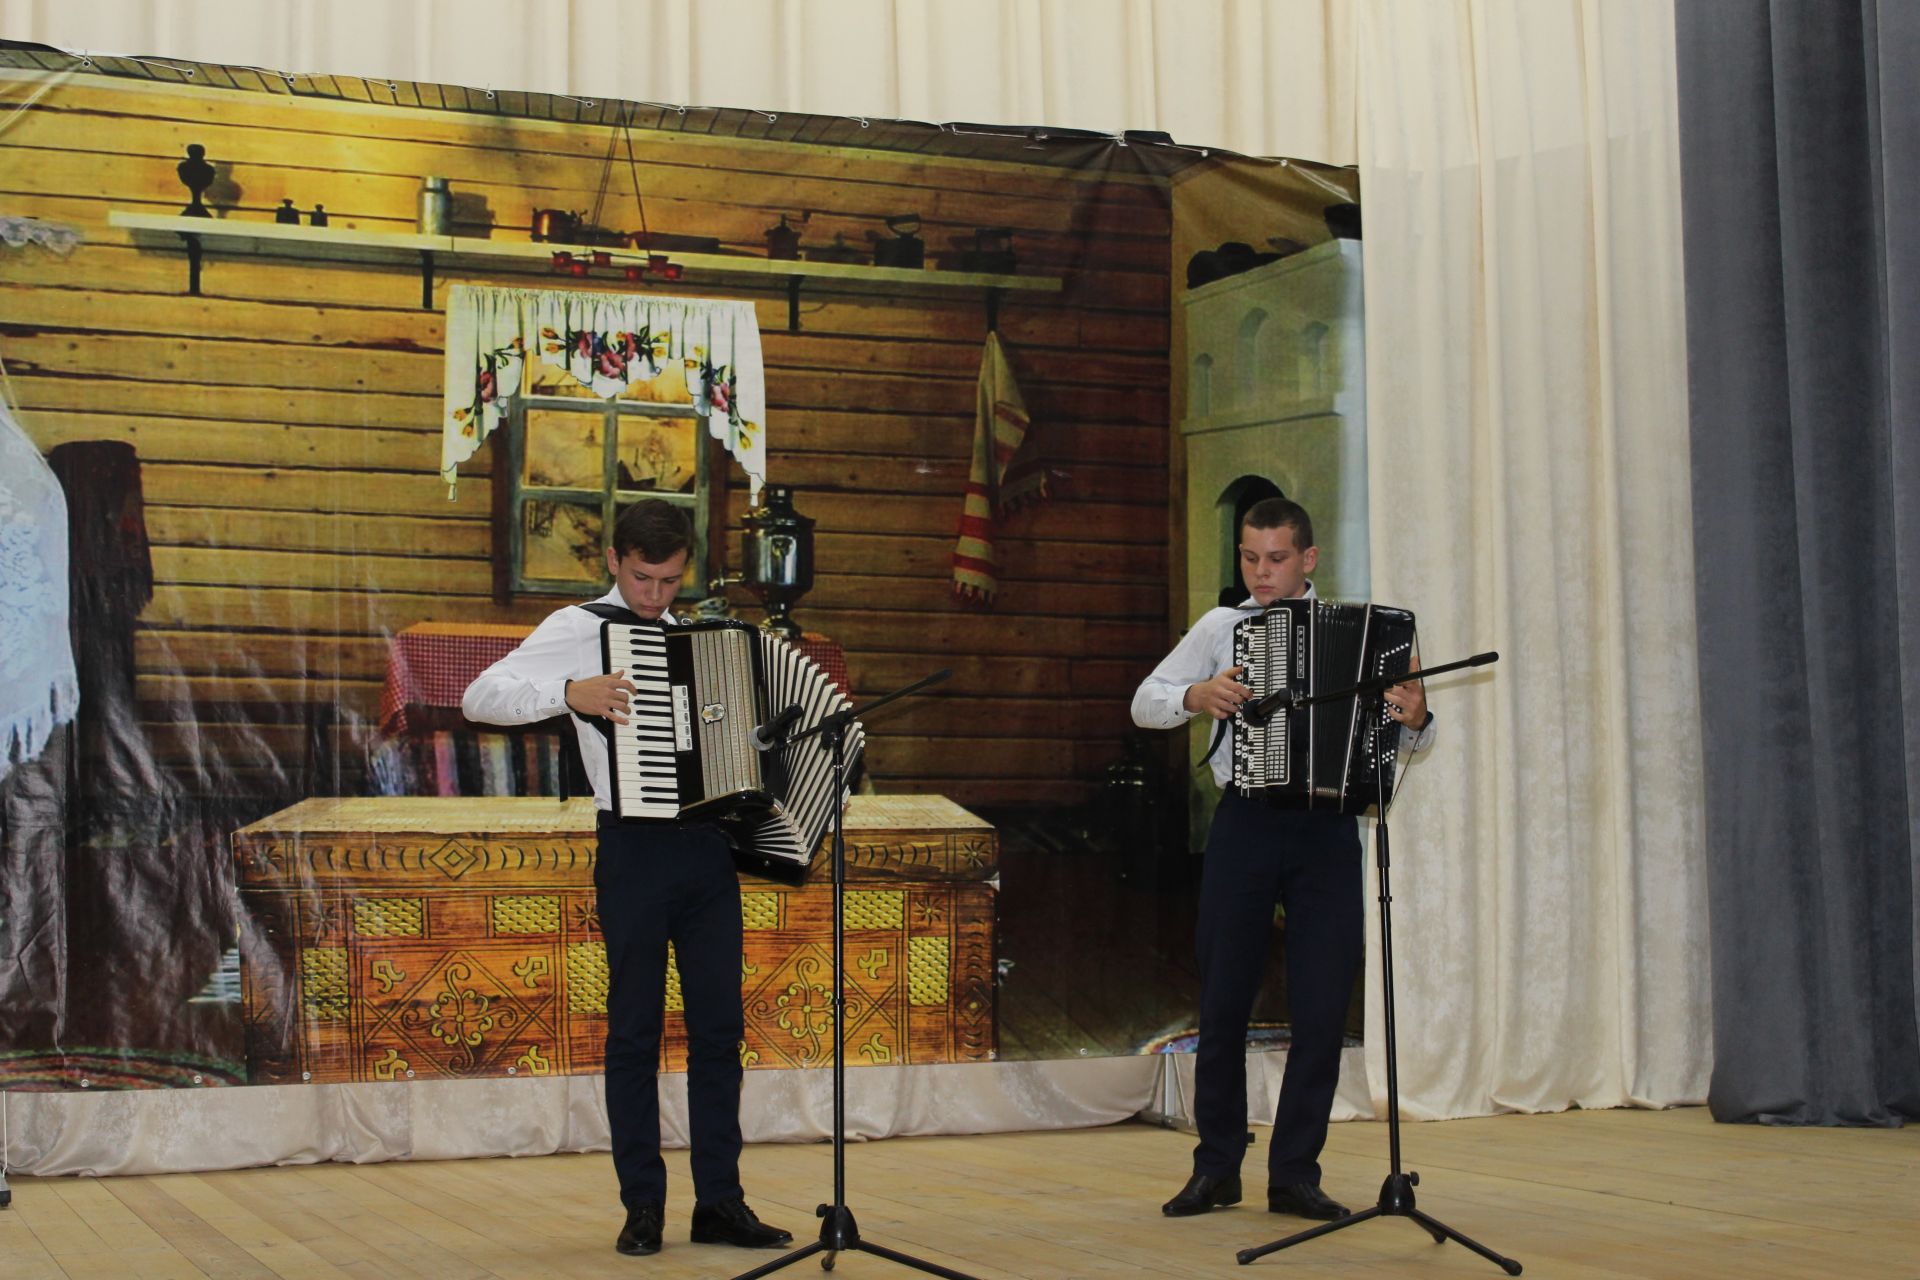 Традиции живы! Молодые таланты из чистопольских сел продемонстрировали знания народных сказок, игр, легенд